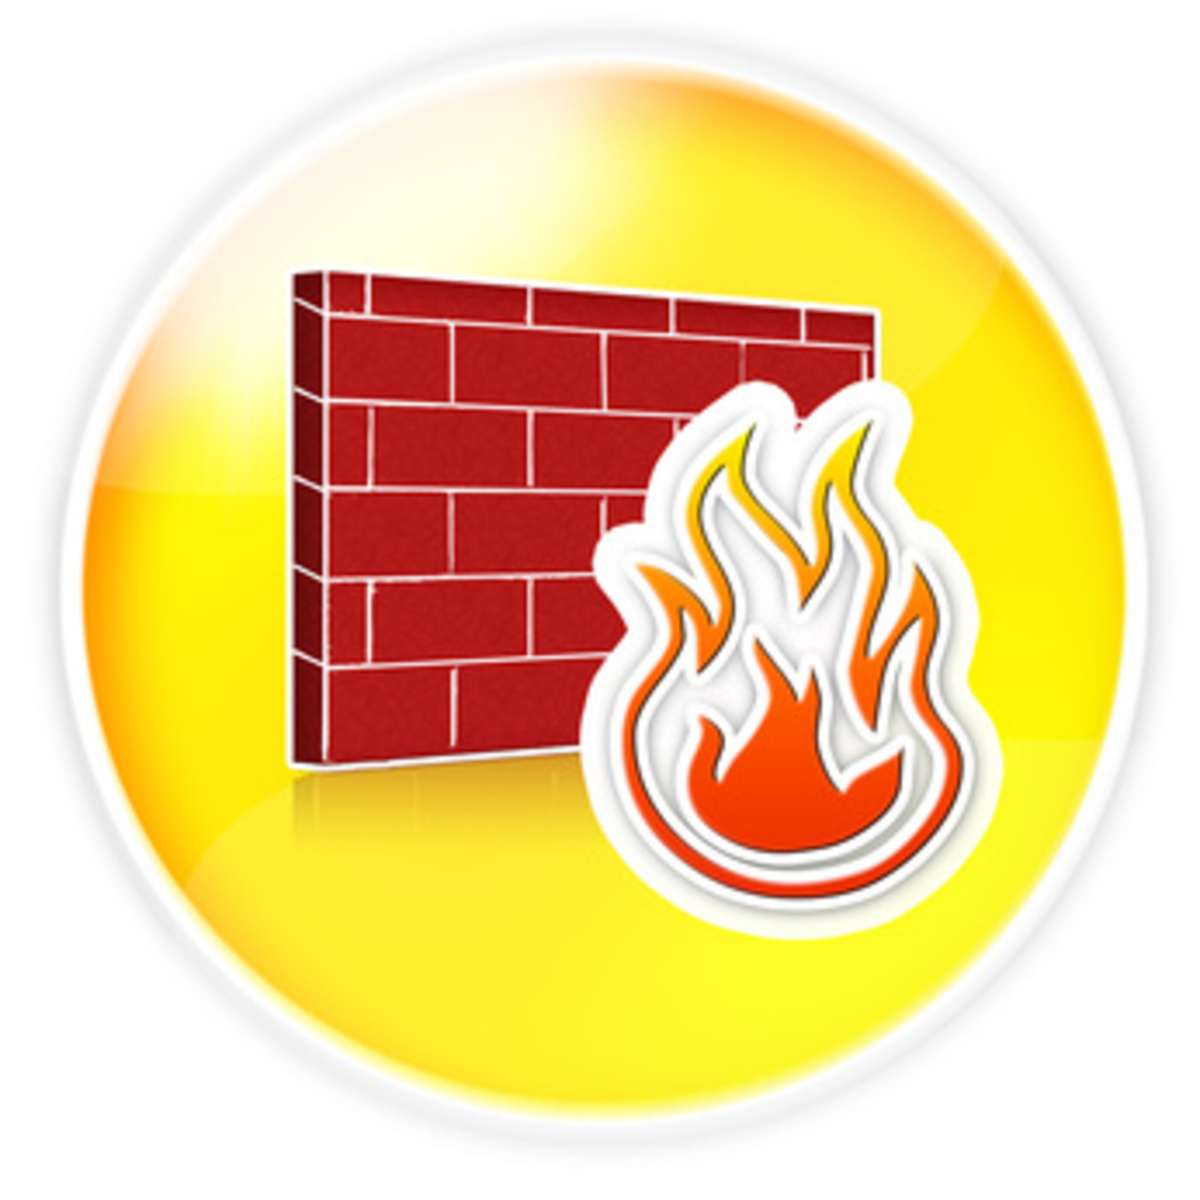 【OSS】ファイアウォール設定管理ツール「Firewall Builder」---シンプルGUI、高度な抽象化機能